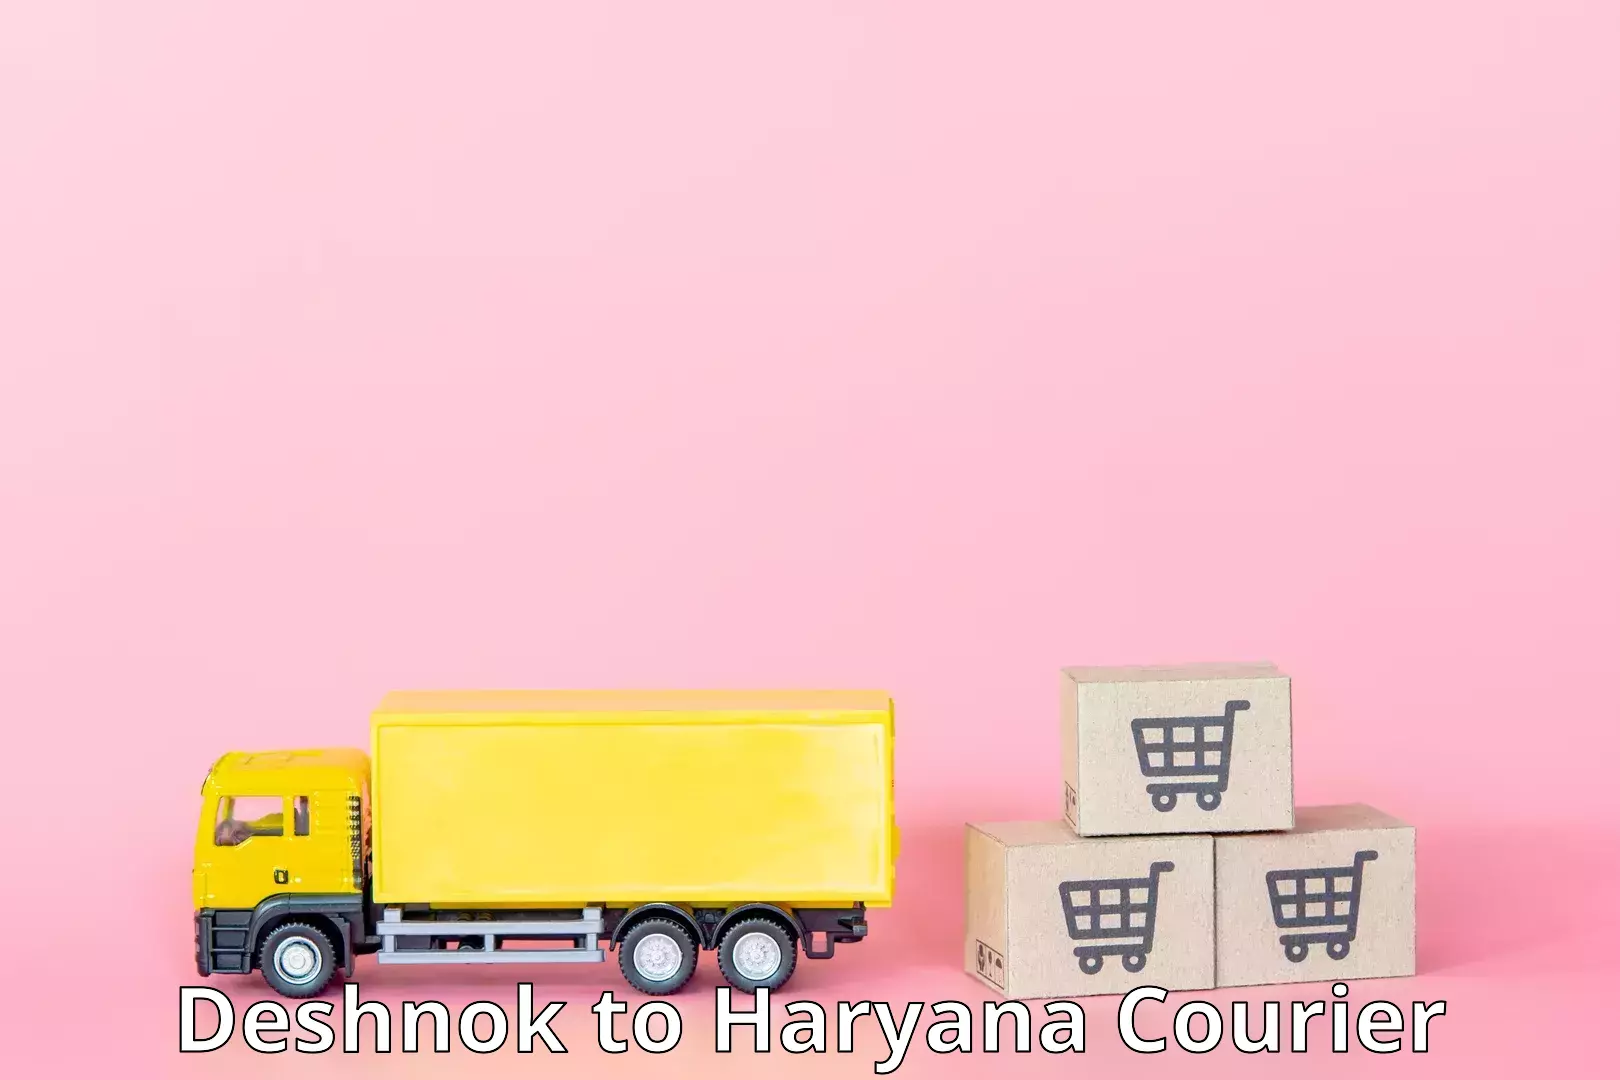 High-speed parcel service Deshnok to Sirsa